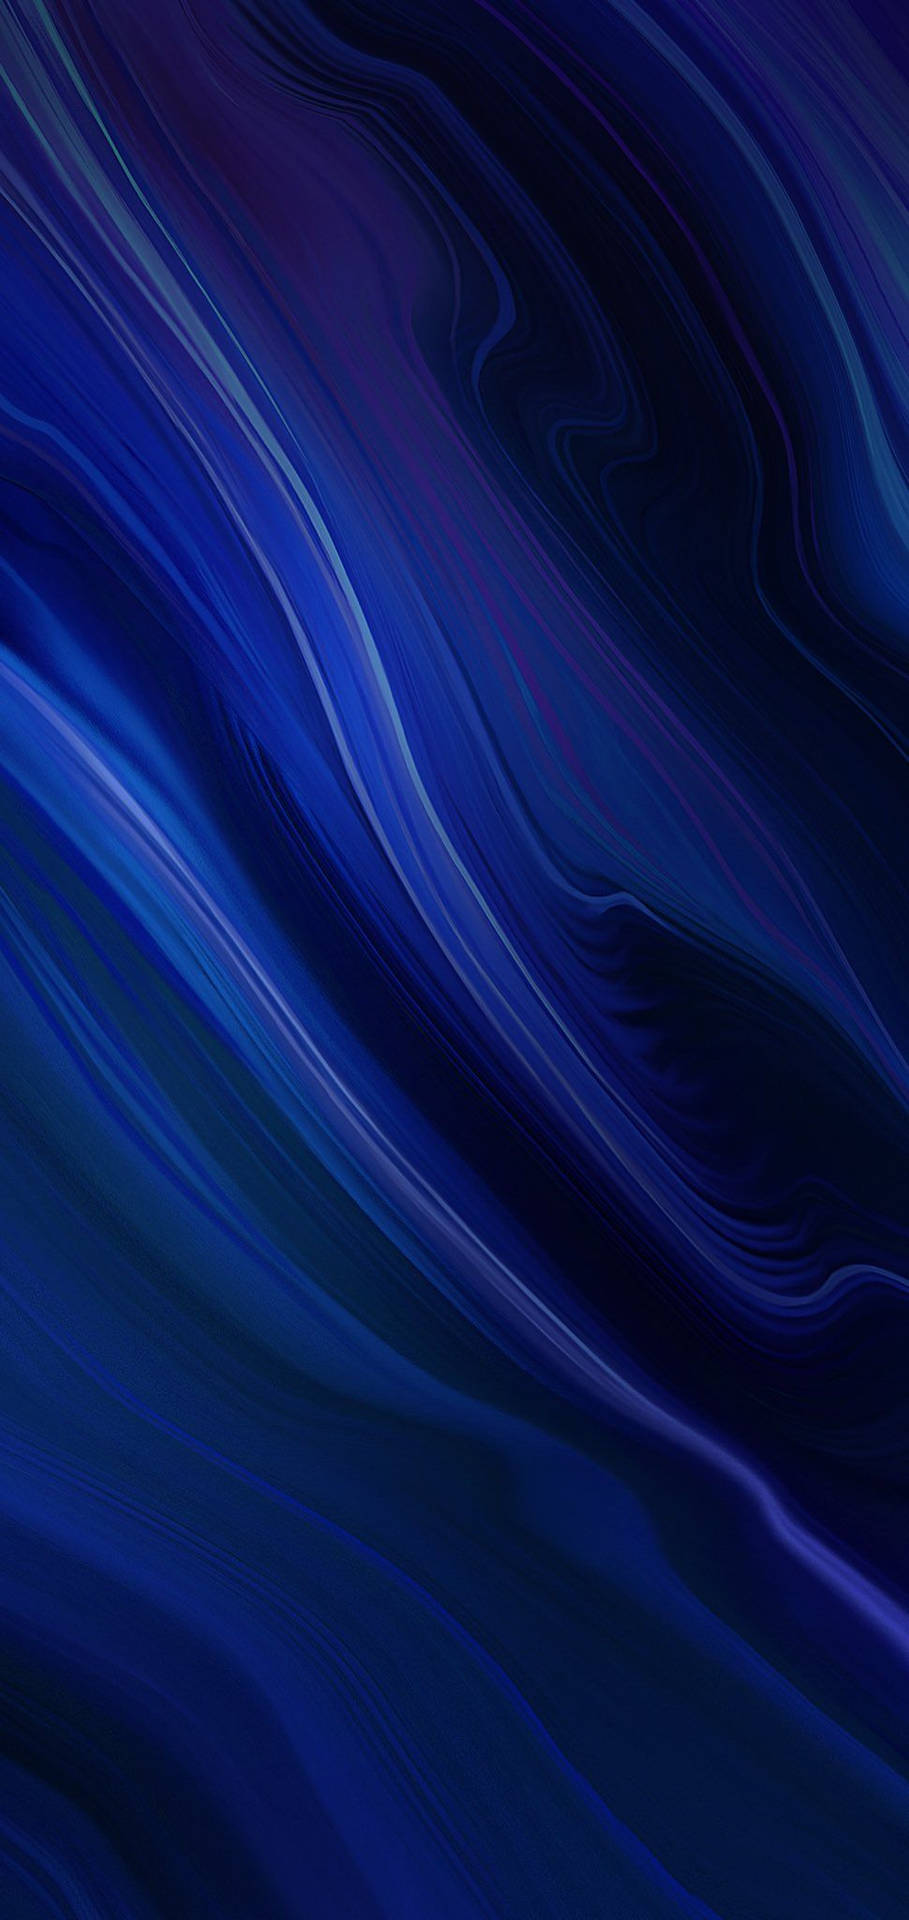 Hvirvlende Farve Blå Iphone Wallpaper